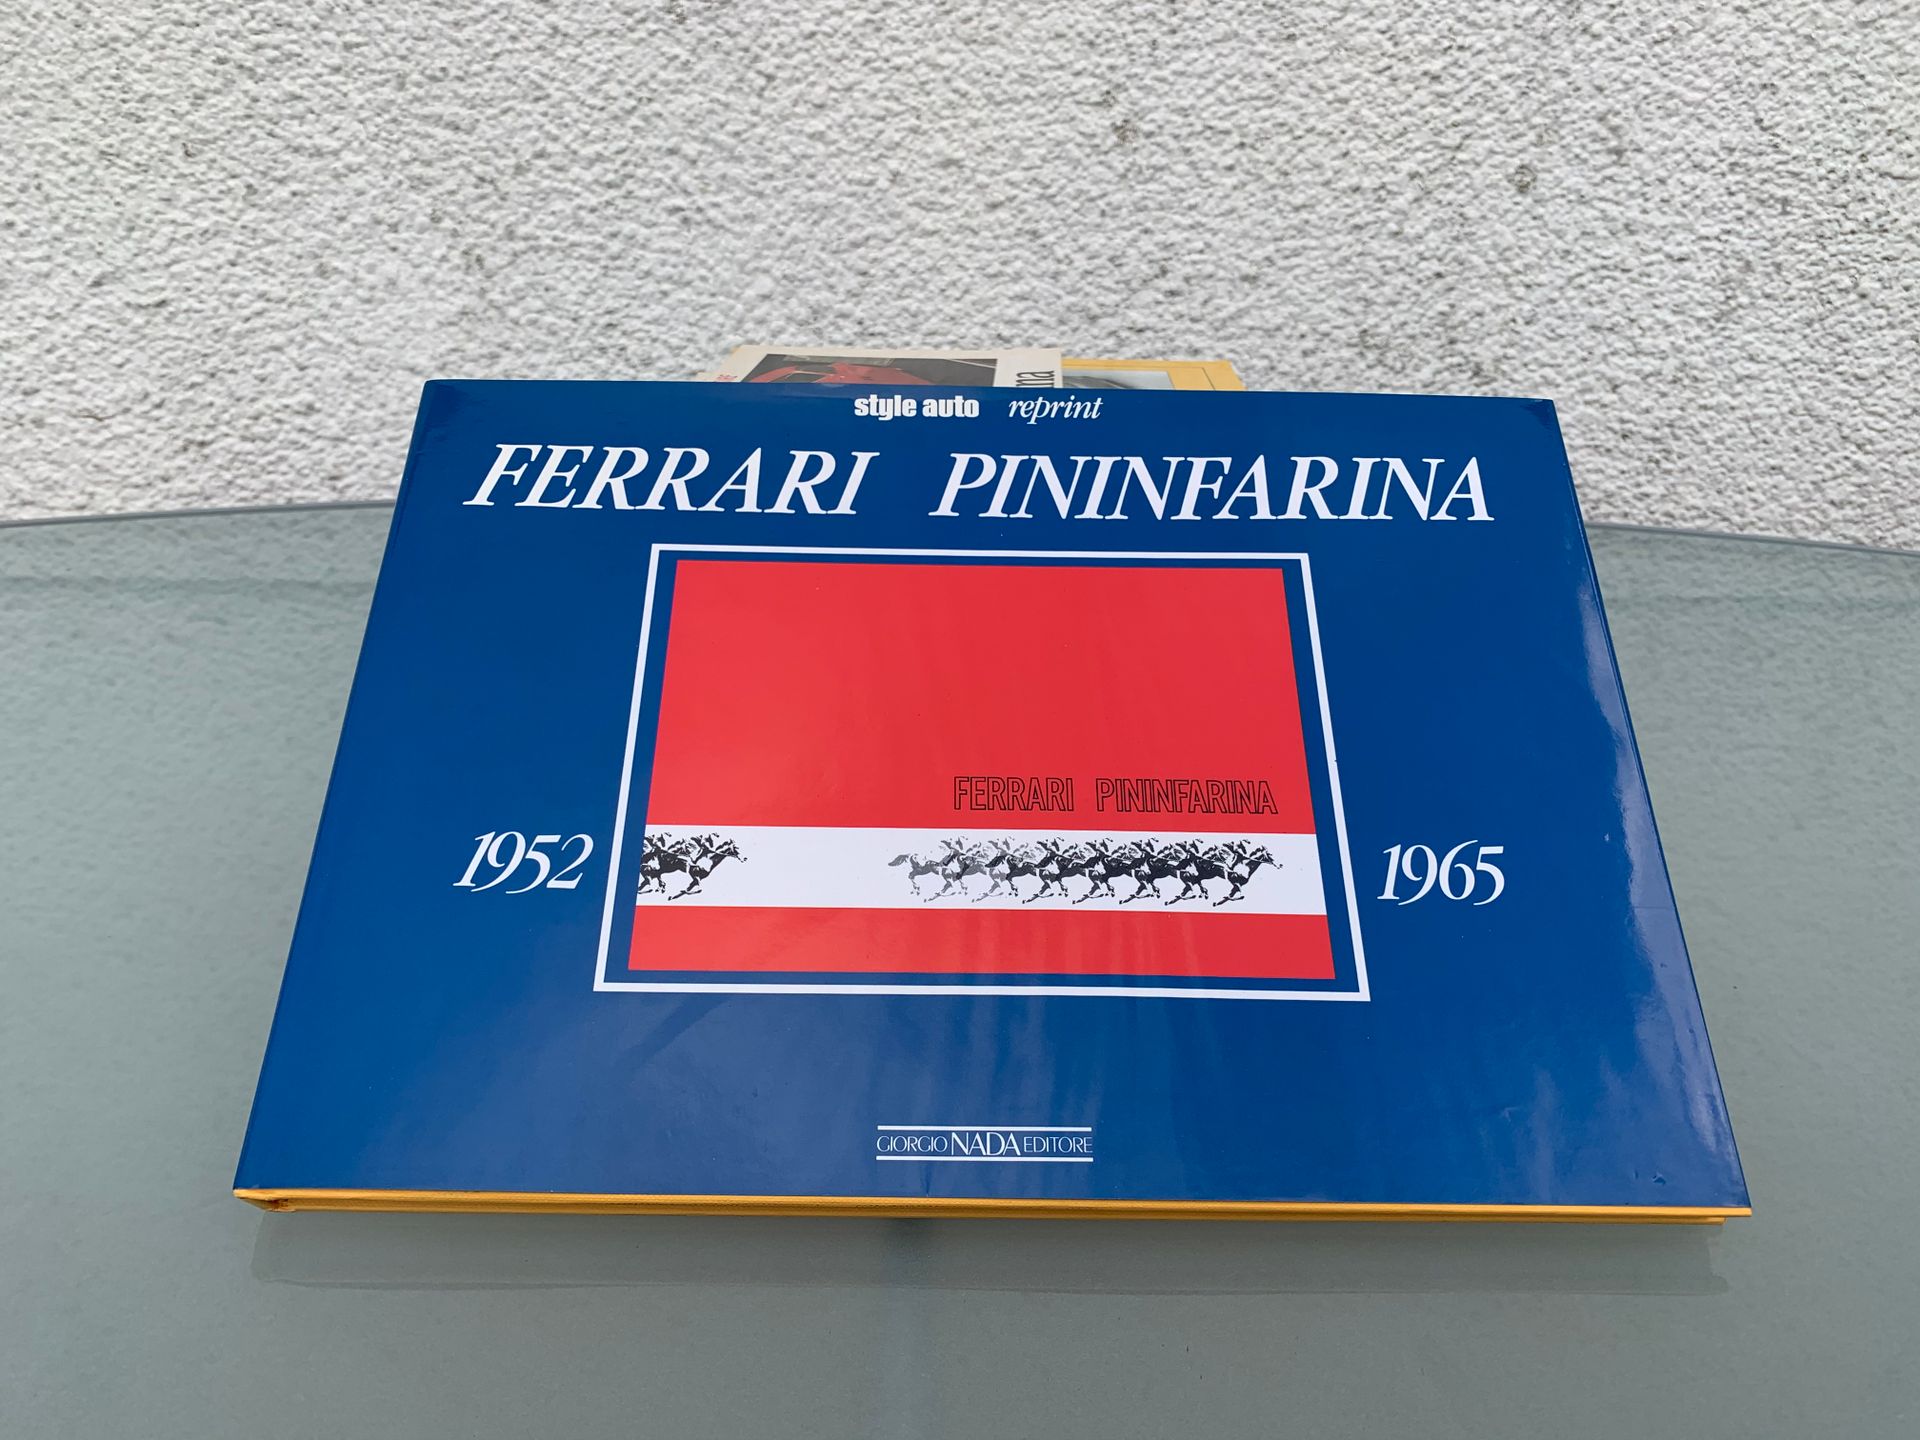 Null 2 libretti Pininfarina
Solitari Pininfarina
Le Ferrari di Pininfarina
Ferra&hellip;